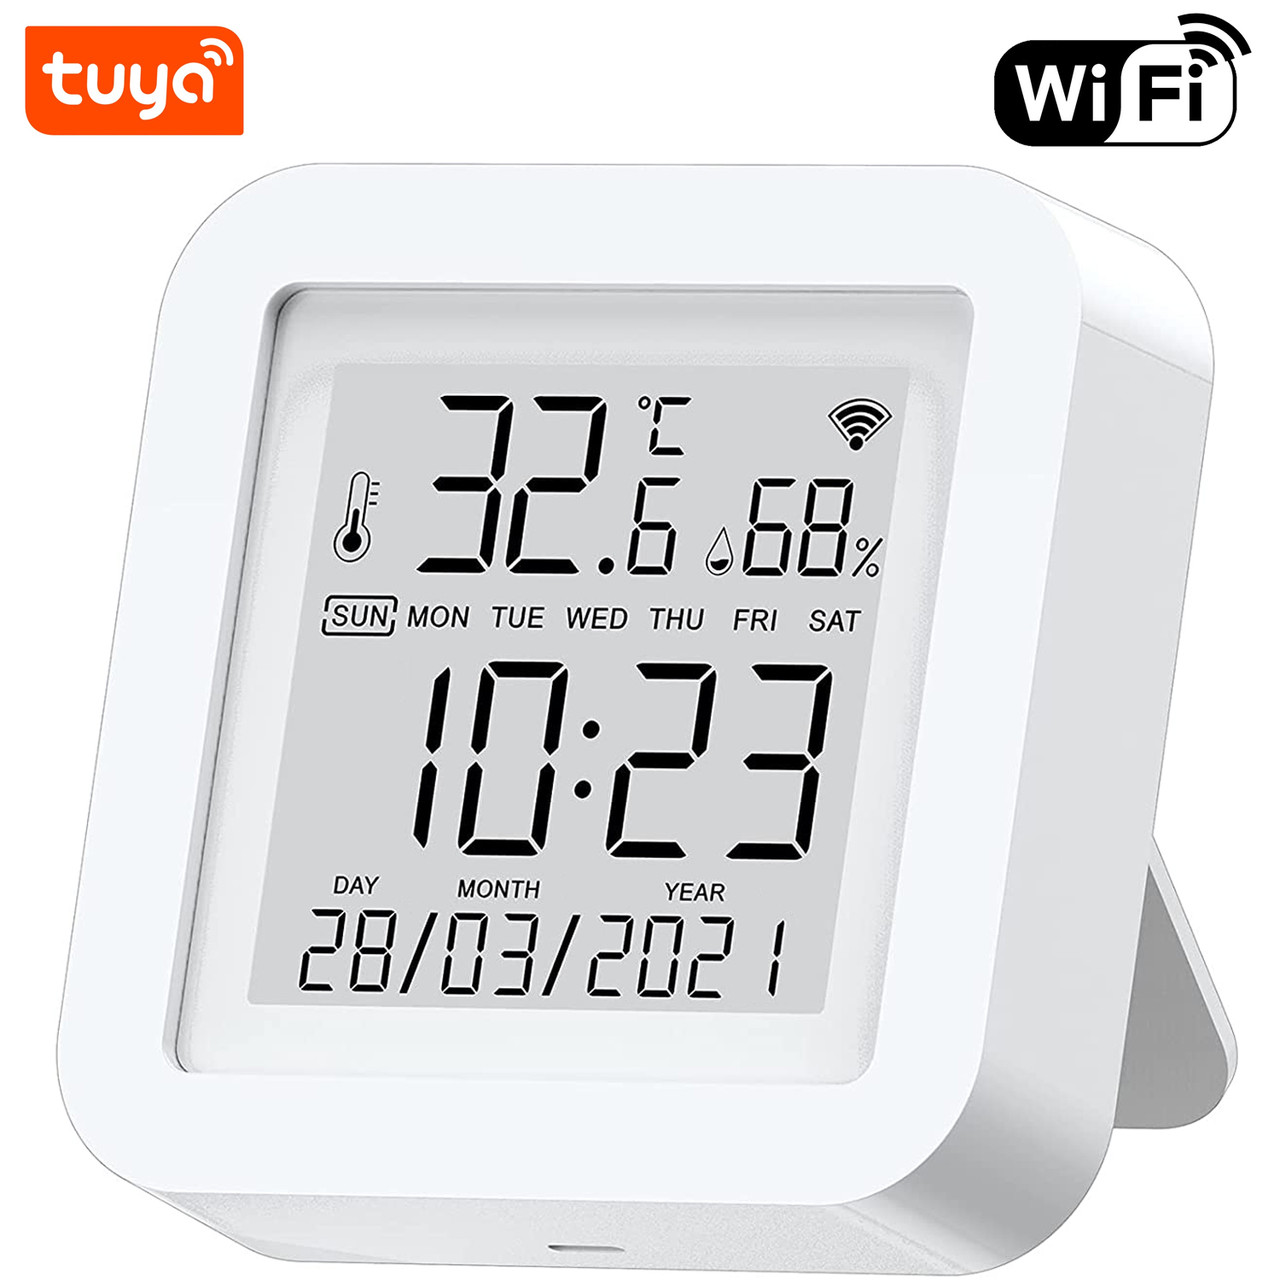 Розумний Wi-Fi датчик температури та вологості USmart THD-03w, термогігрометр з годинником та календарем, Tuya, фото 1